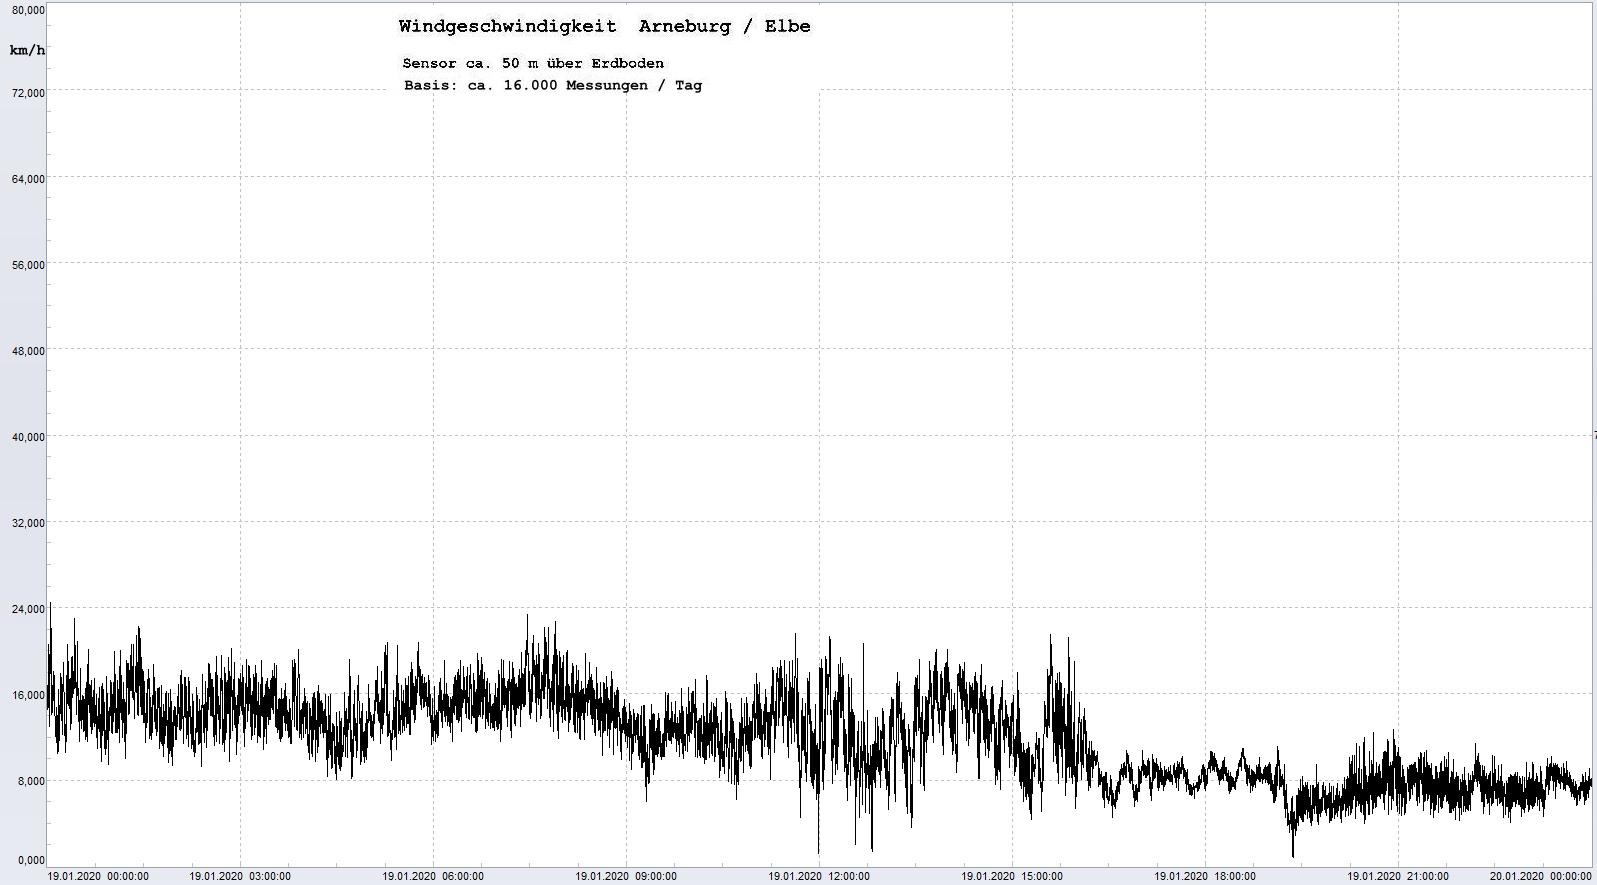 Arneburg Tages-Diagramm Winddaten, 19.01.2020
  Histogramm, Sensor auf Gebäude, ca. 50 m über Erdboden, Basis: 5s-Aufzeichnung